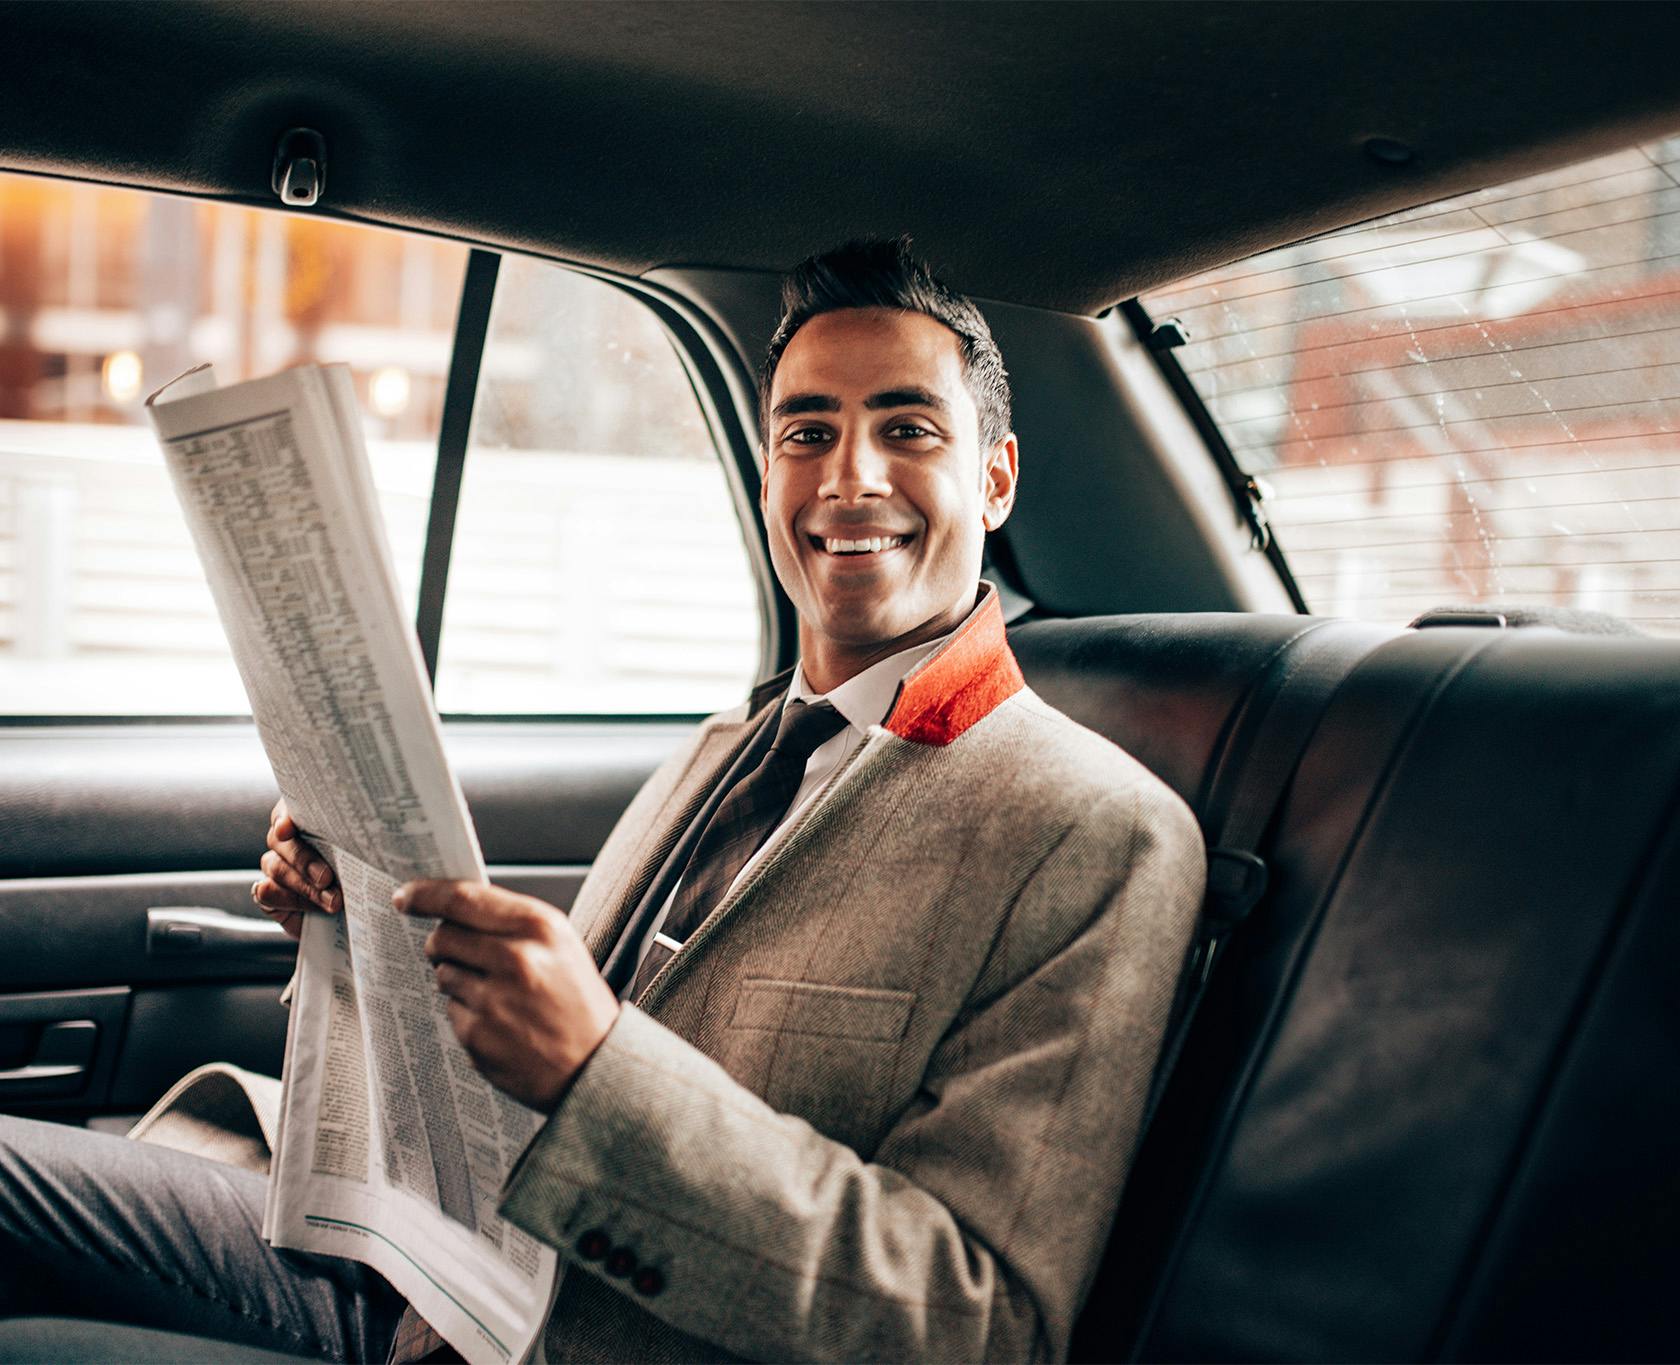 Man in formal attire sitting in a car